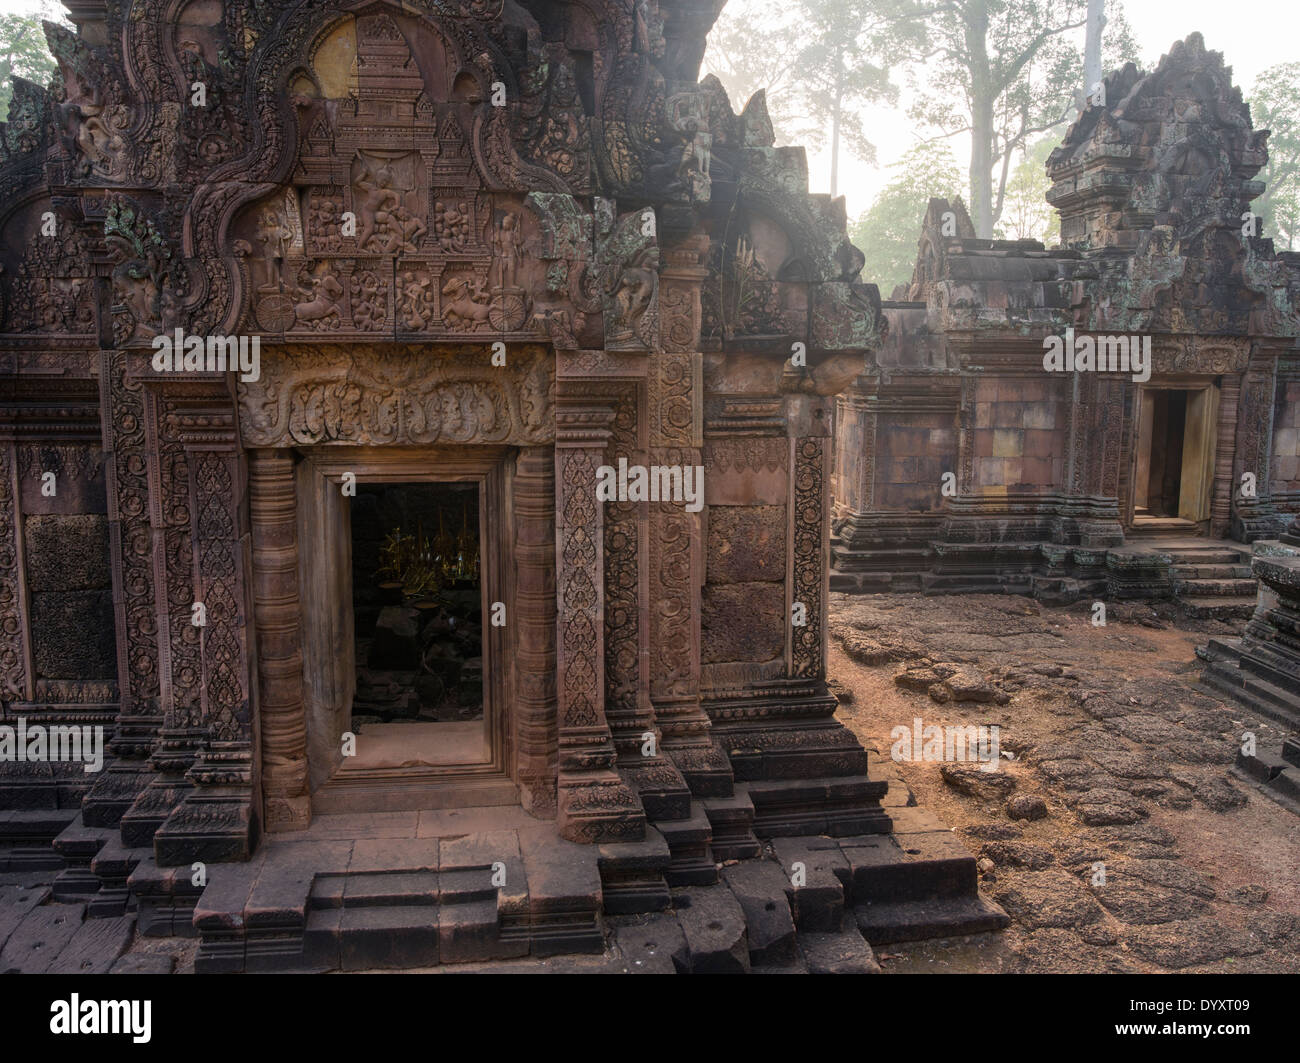 Banteay Srei templo hindú dedicado a Shiva. En Siem Reap, Camboya Foto de stock